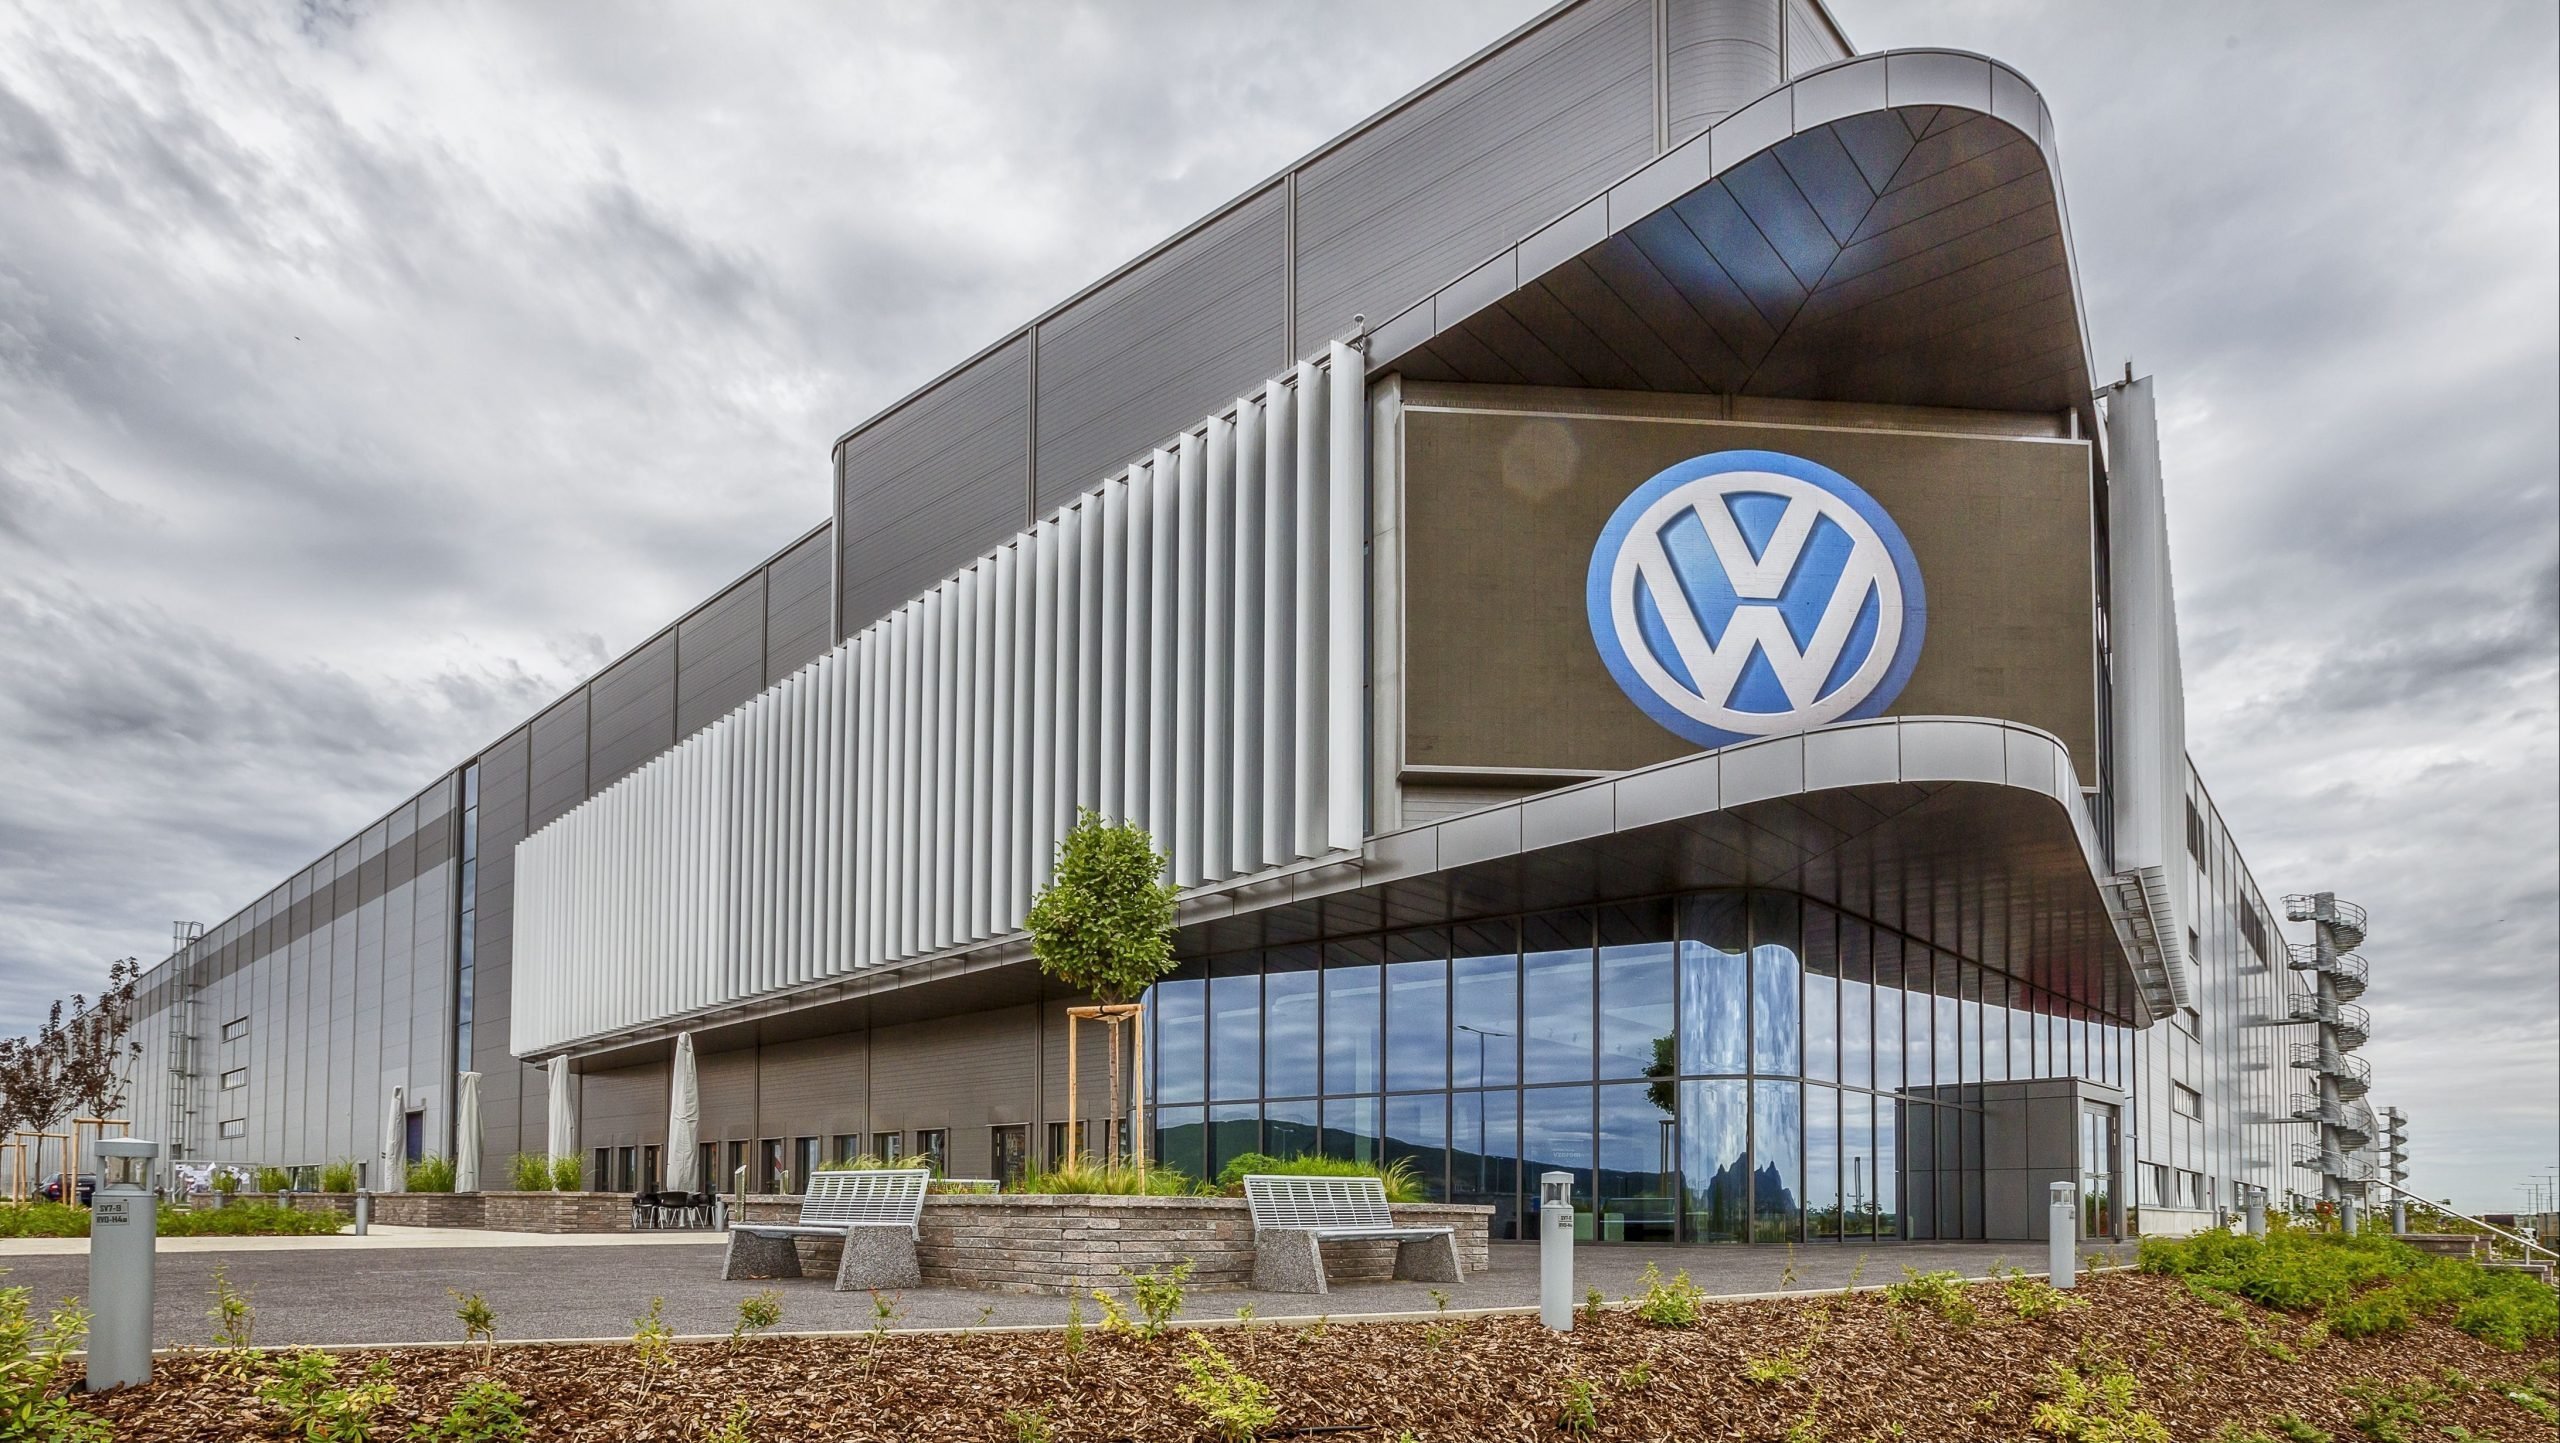 Păcăleală de 1 Aprilie! Volkswagen nu va schimba numele diviziei americane în Voltswagen